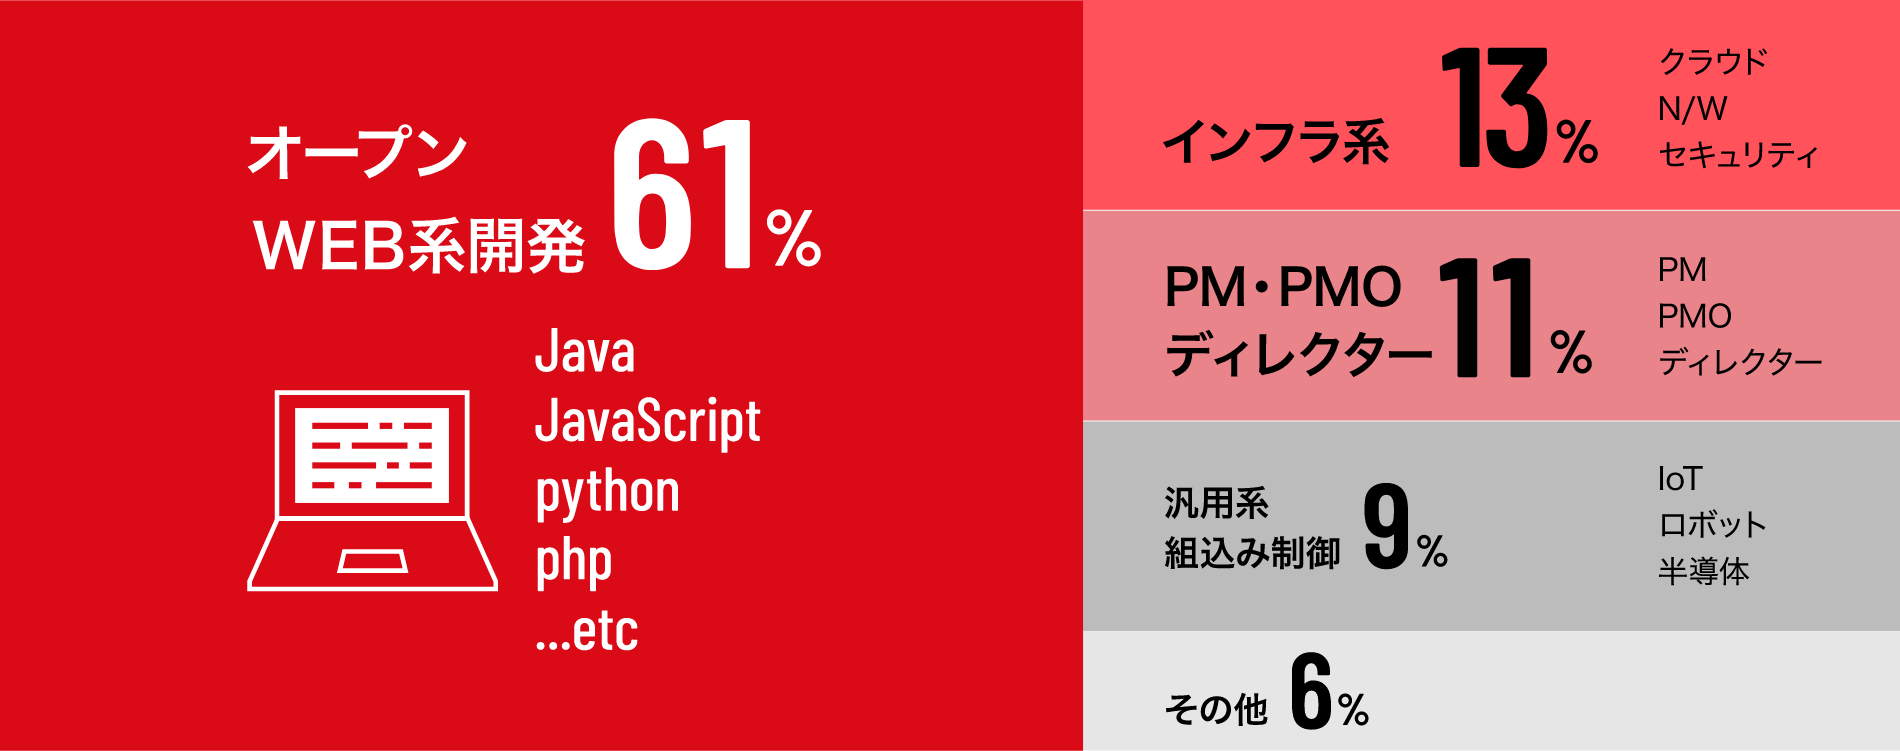 オープンWEB系開発61%(Java,JavaScript,python,php) インフラ系13% クラウドN/Wセキュリティ PM・PMOディレクター11% PMPMOディレクター 汎用系組込み制御9% loTロボット半導体 その他6%